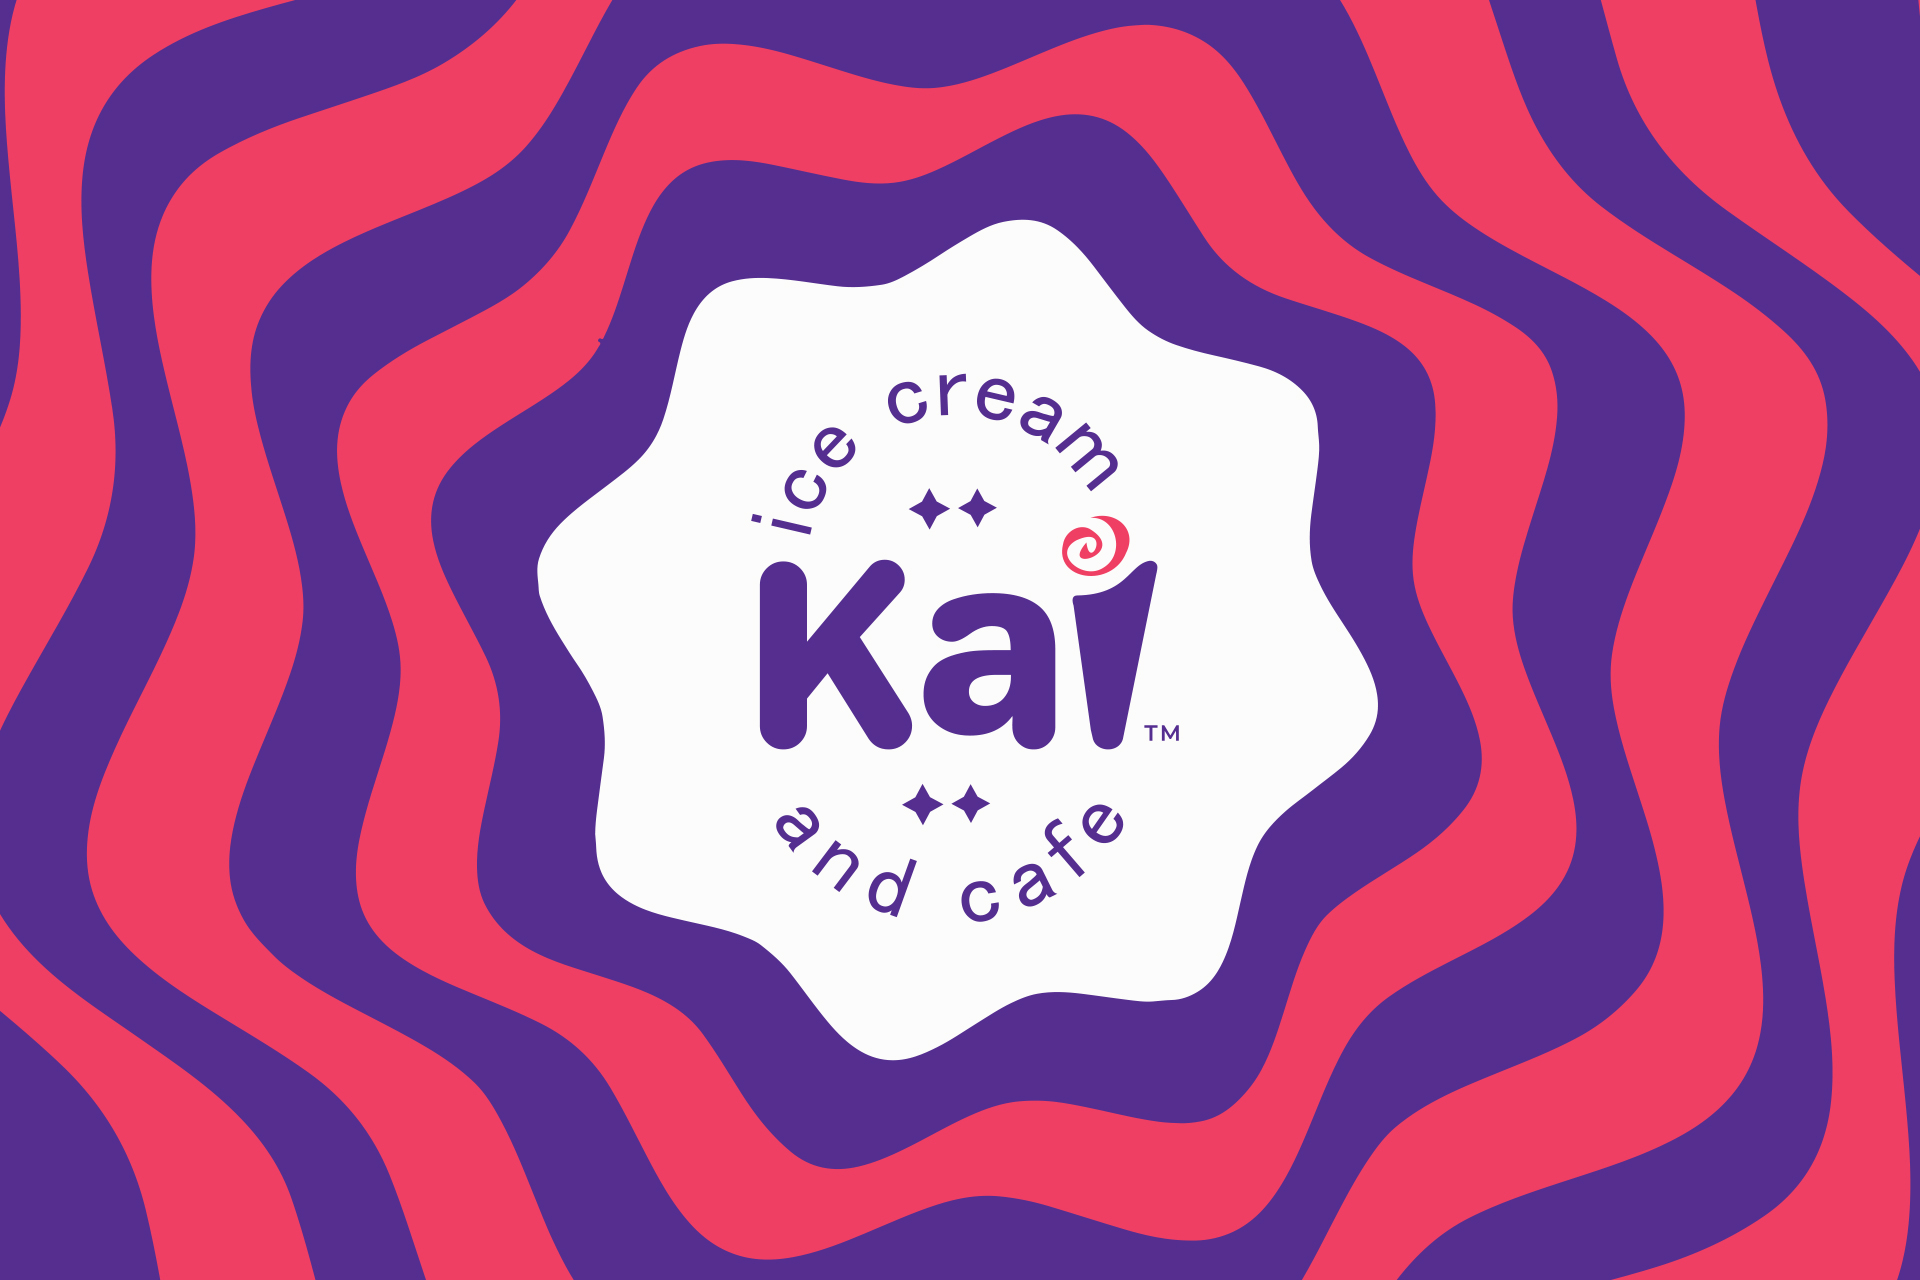 Kai Ice Cream & Cafe Branding